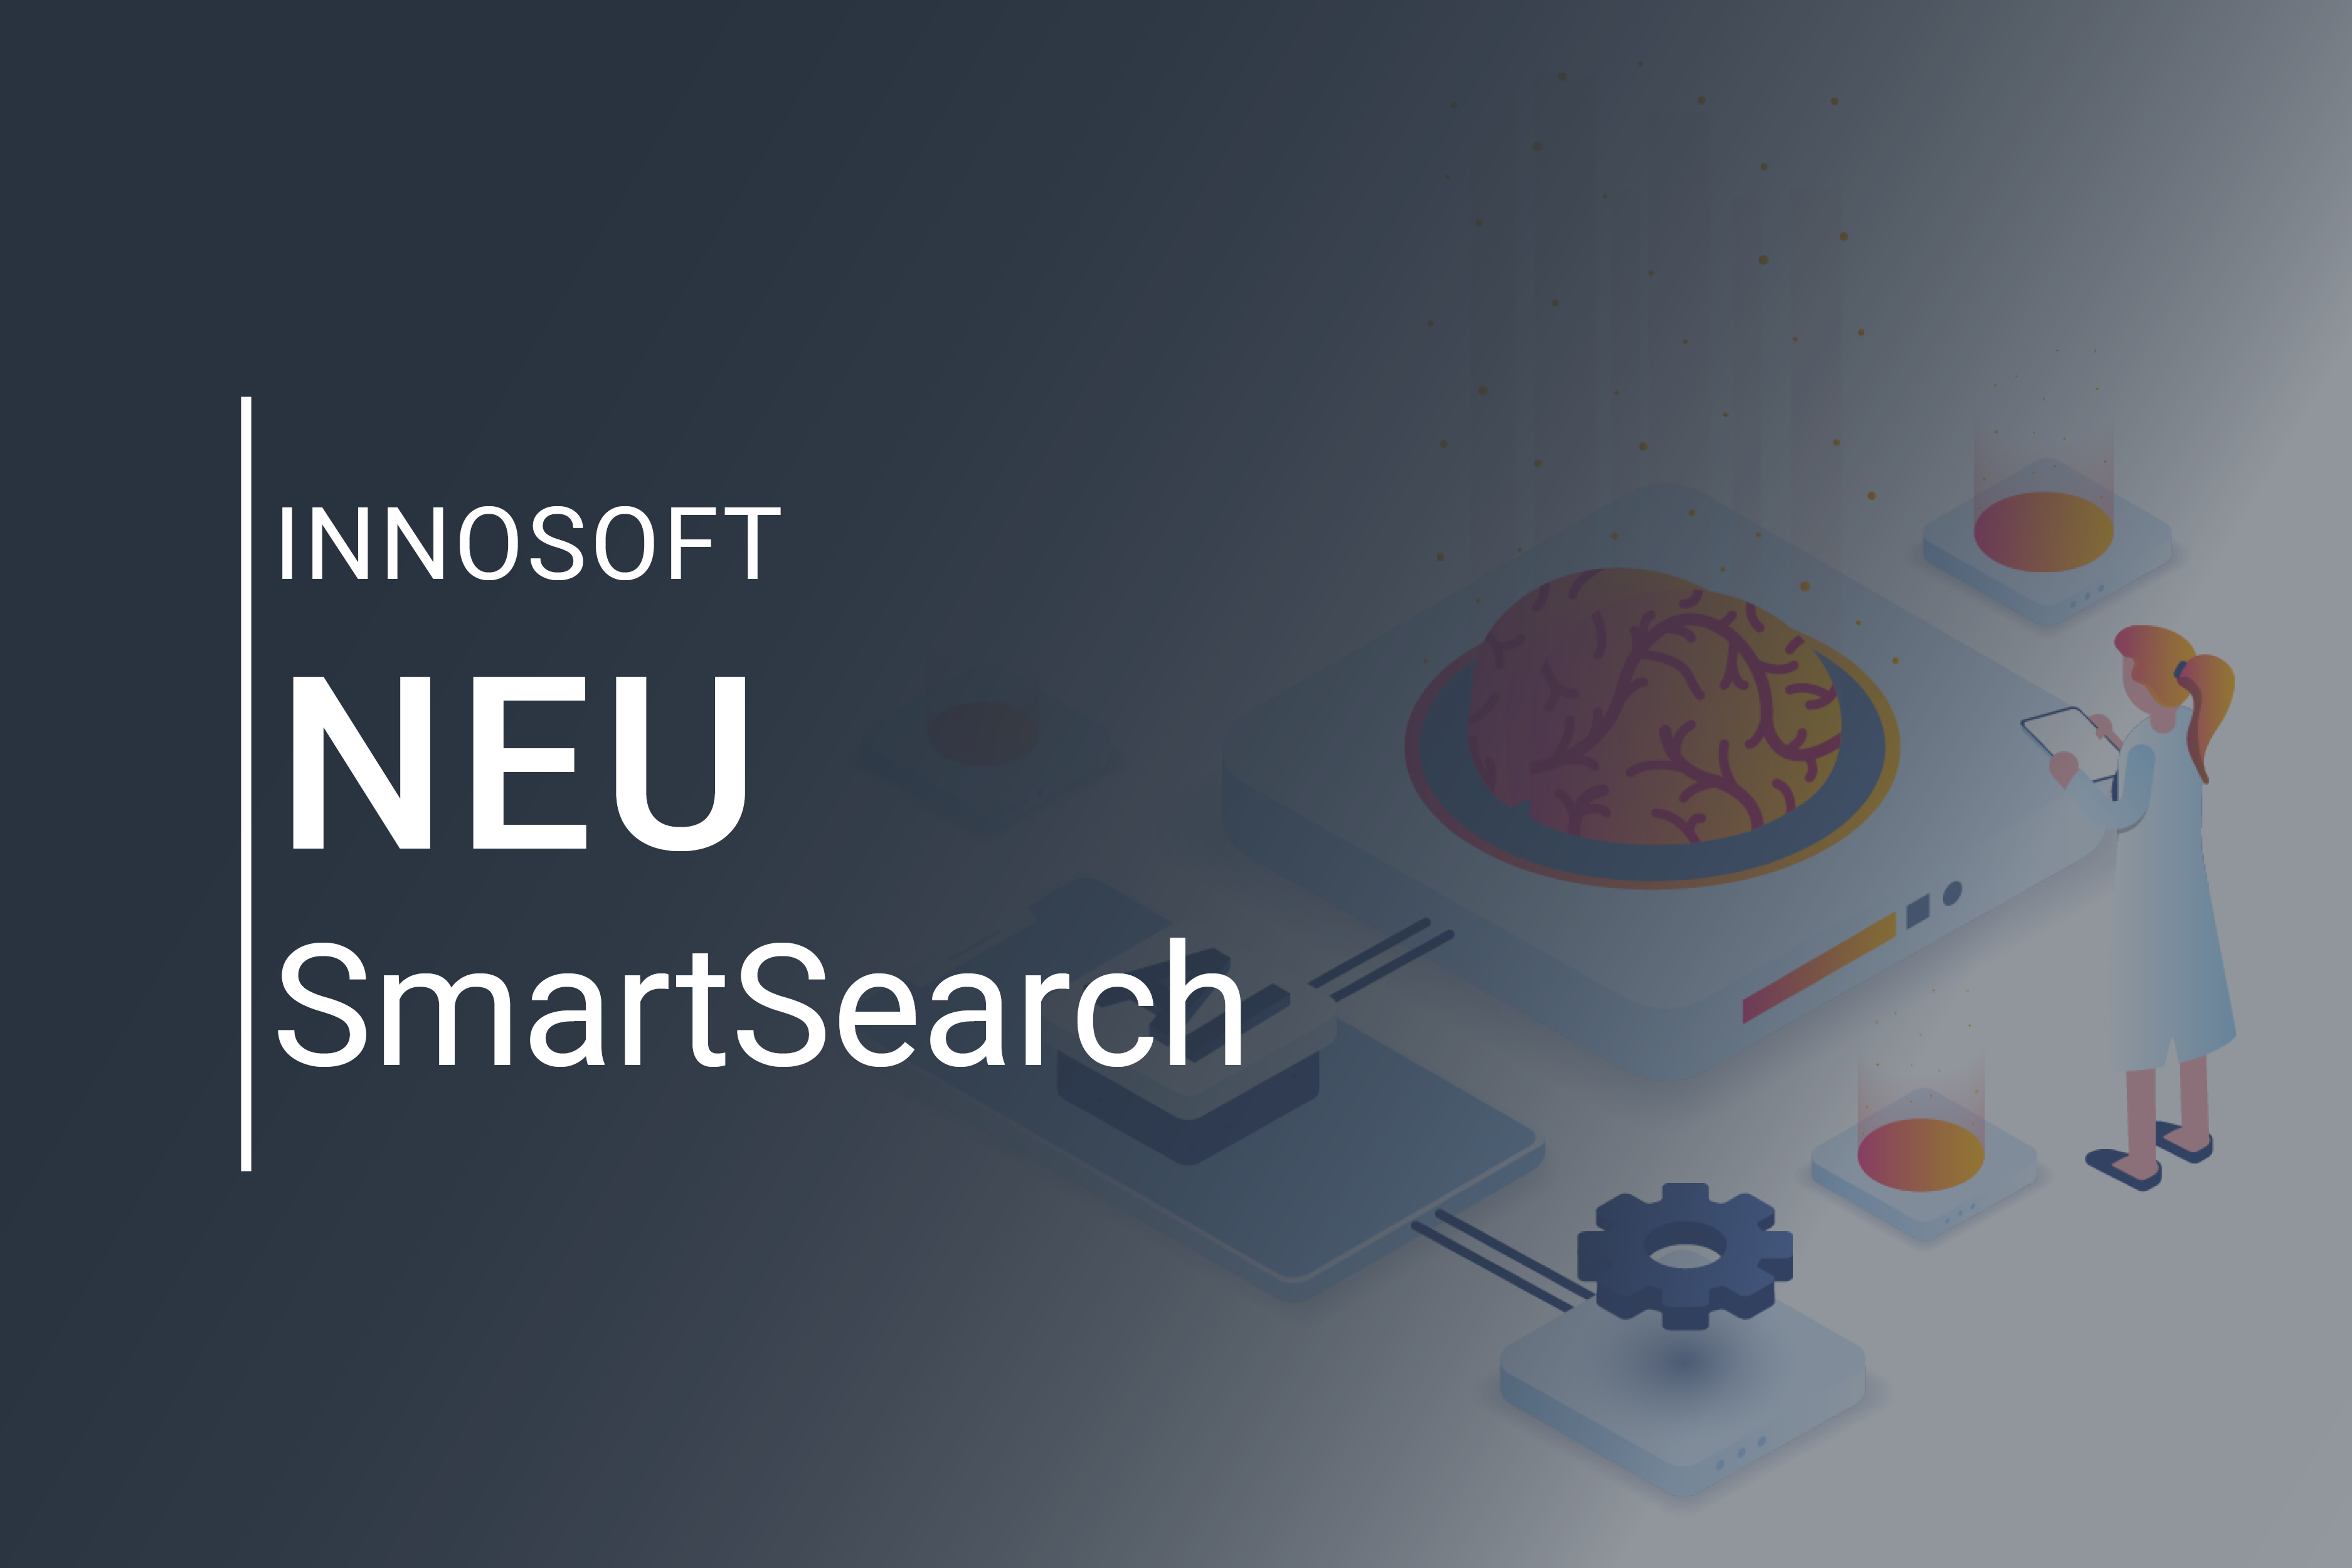 Innosoft Neu SmartSearch